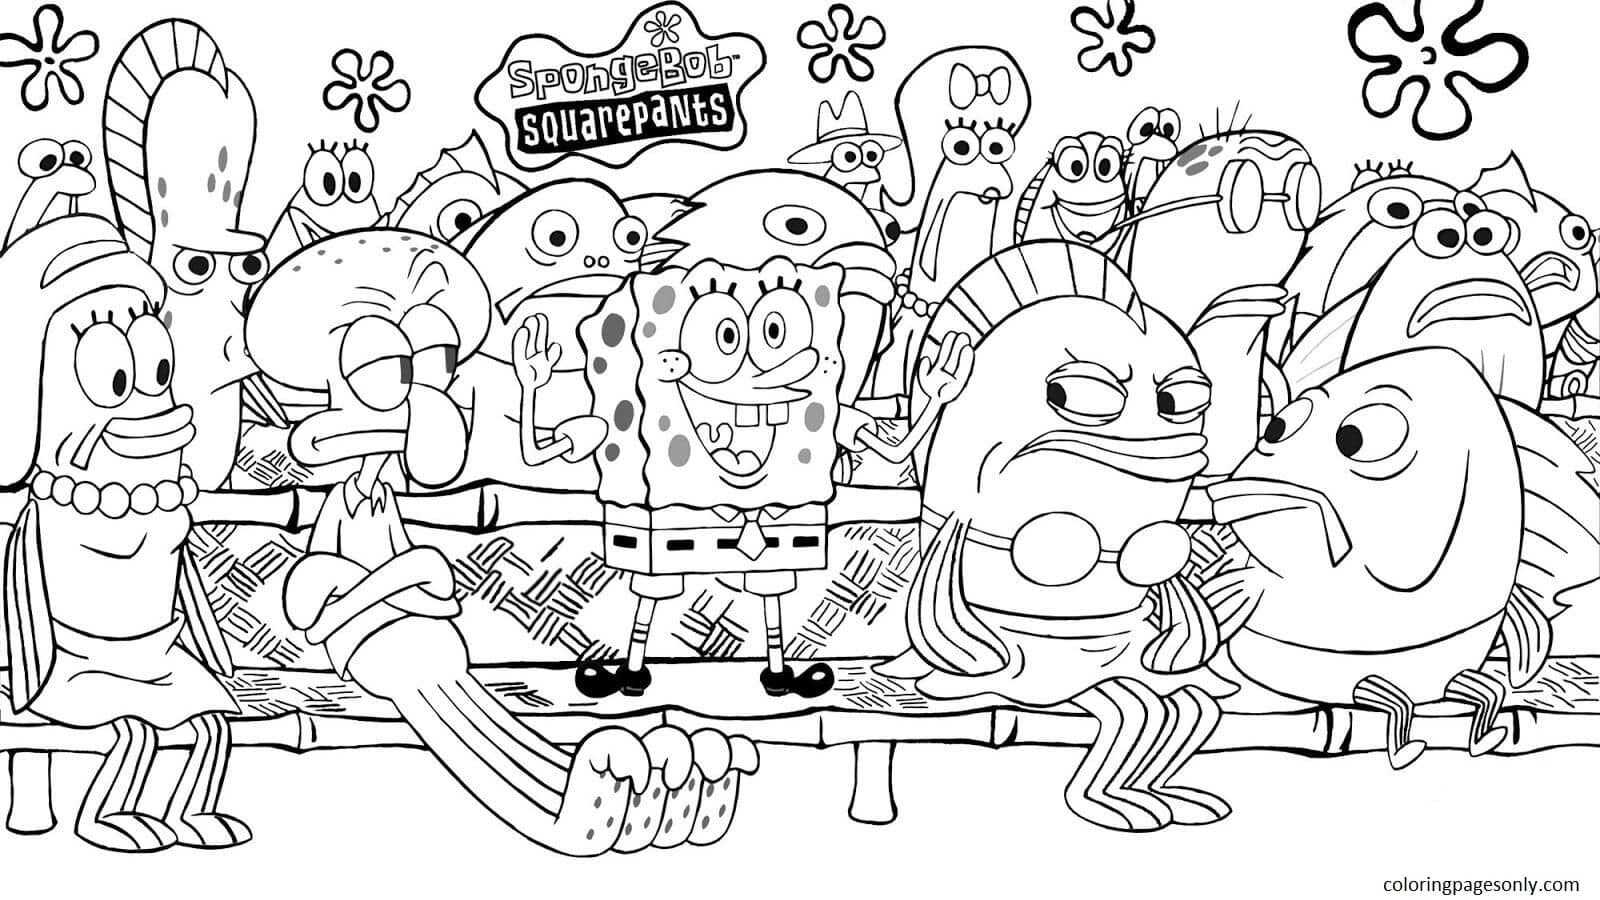 Pagina da colorare di Spongebob e amici